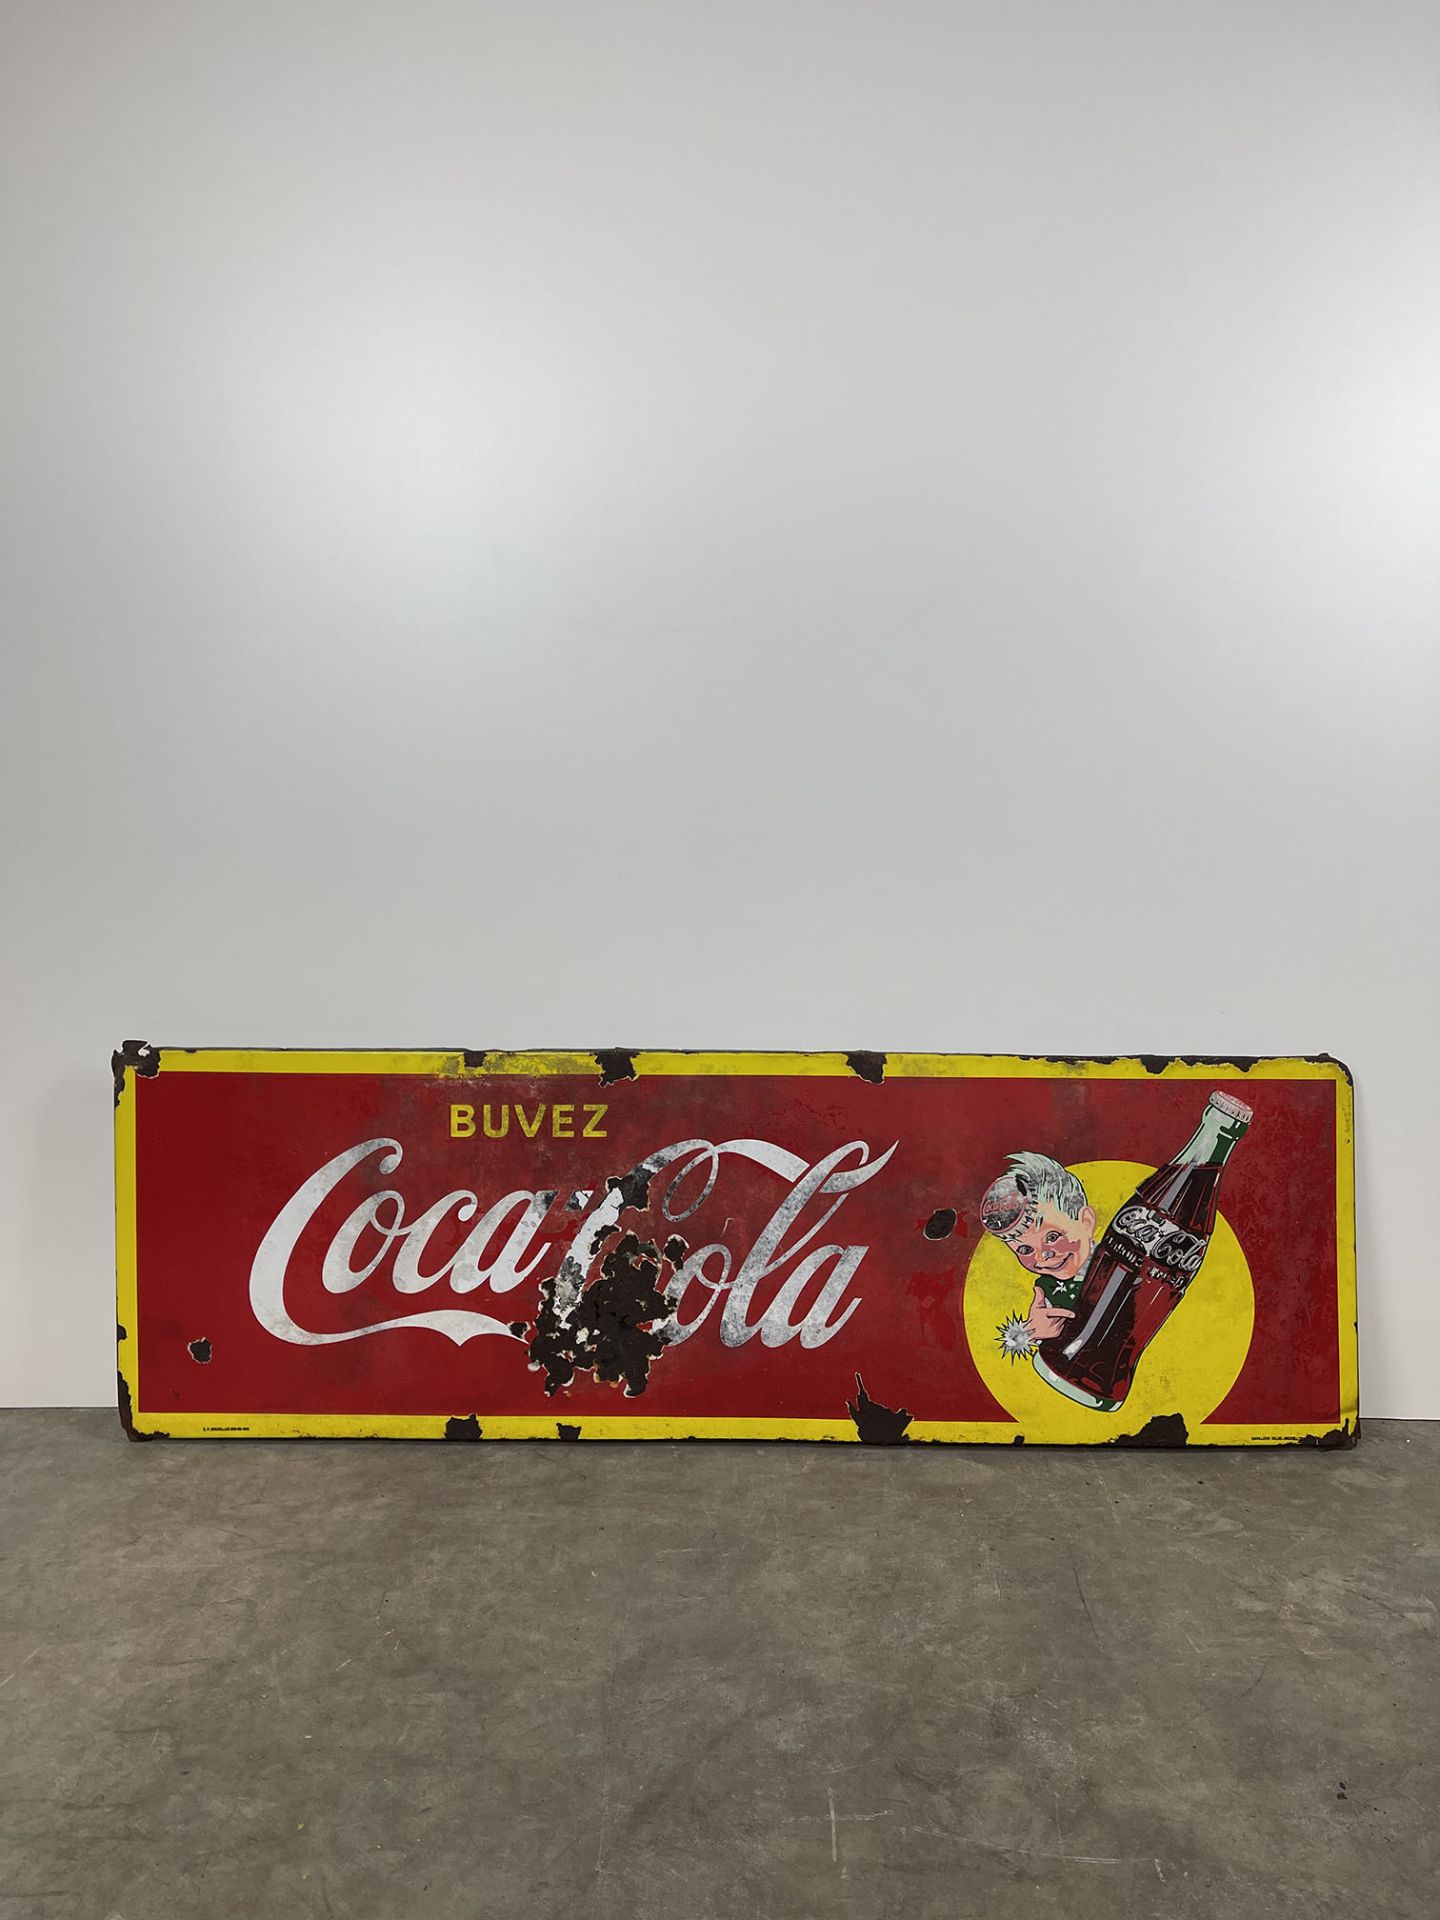 Vintage Belgian Coca-Cola Enamel Sign Featuring Coca-Cola Sprite Boy - Image 2 of 7